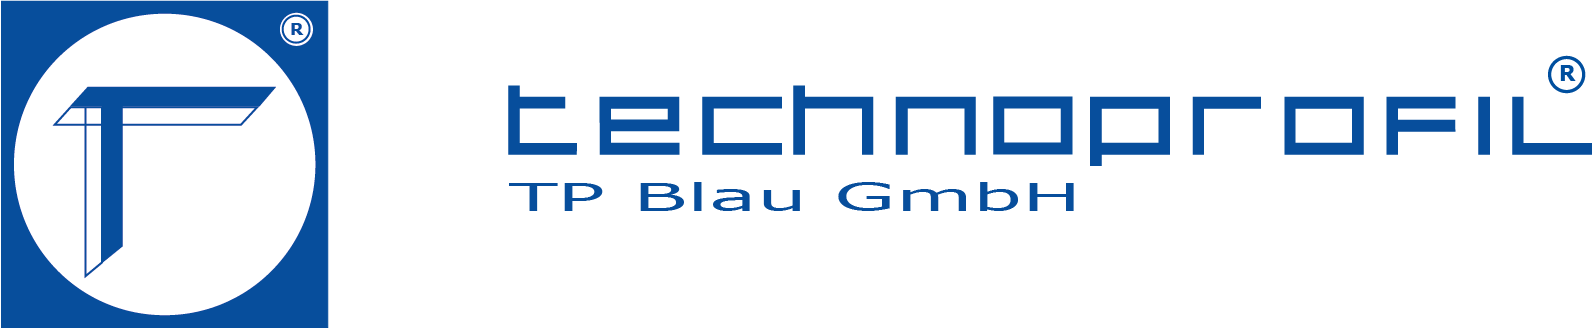 TP Blau Shop-Logo